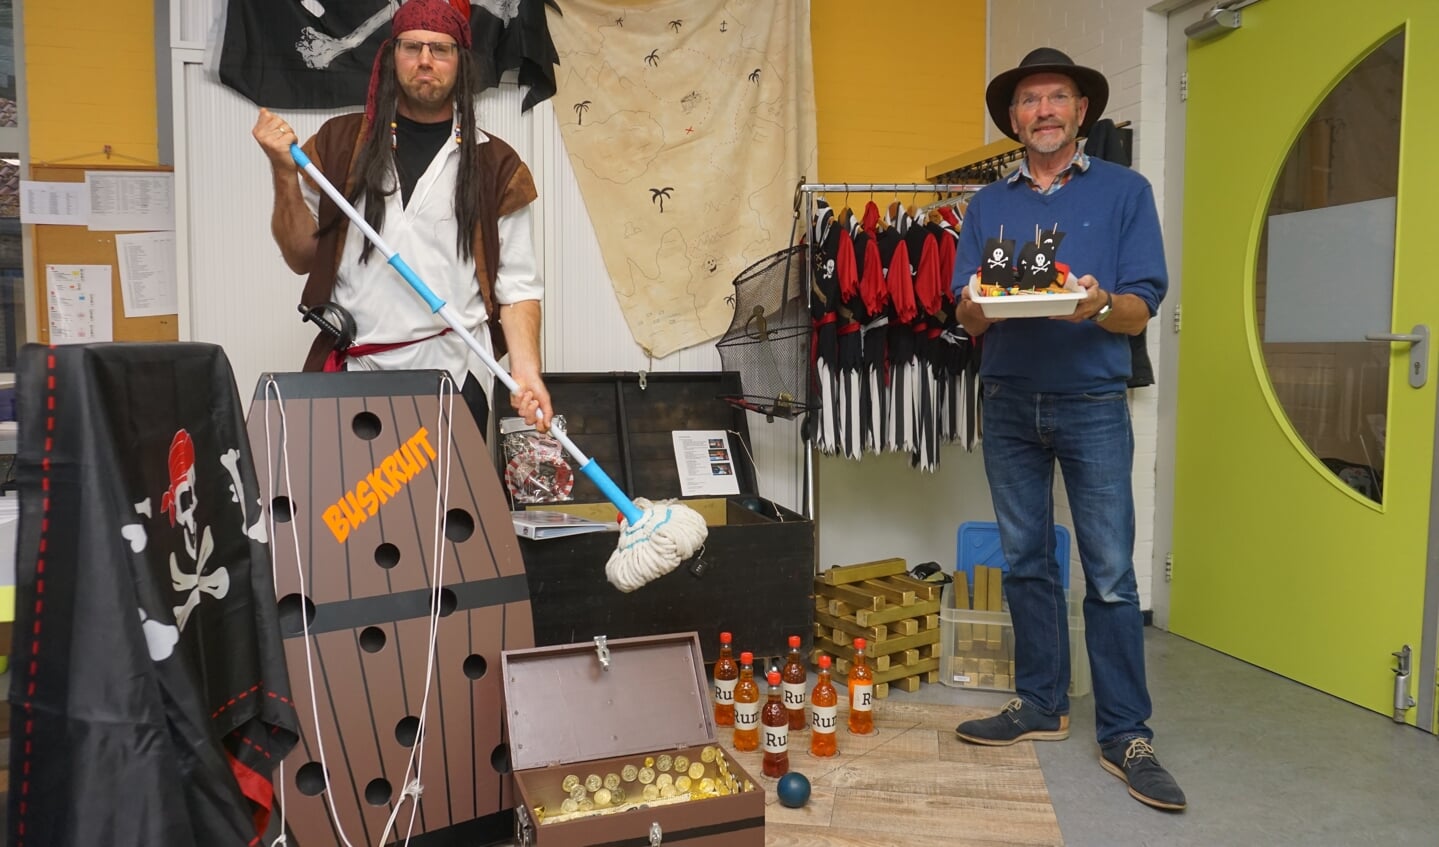 Verjaardag vieren als een echte piraat? Hoe dat moet laten piraat Henry en Harm Klifman zien Bij Tante Leen. 